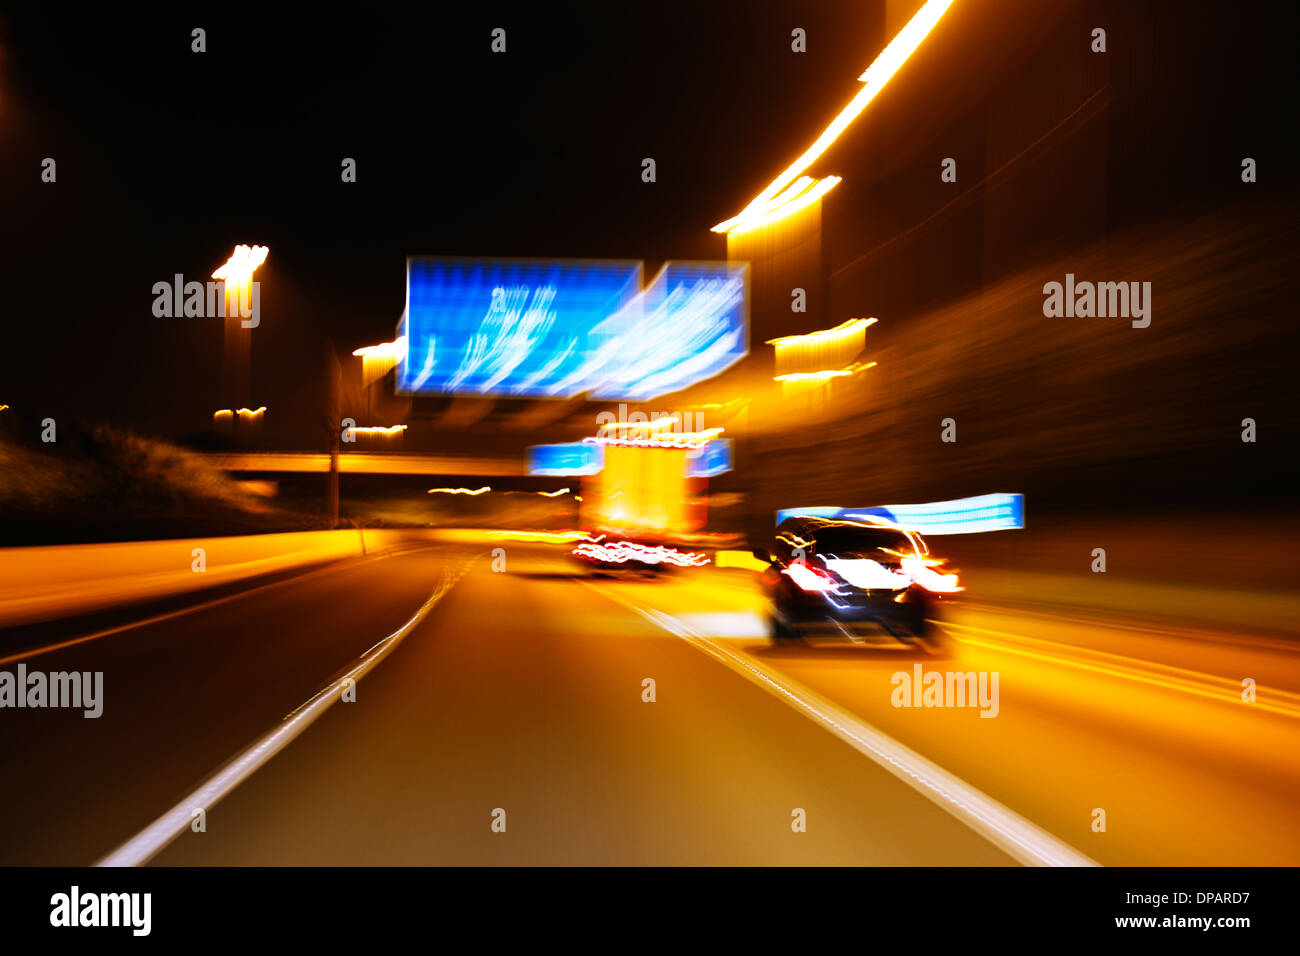 Une impression de style photo de mouvement du trafic sur une autoroute de nuit Banque D'Images